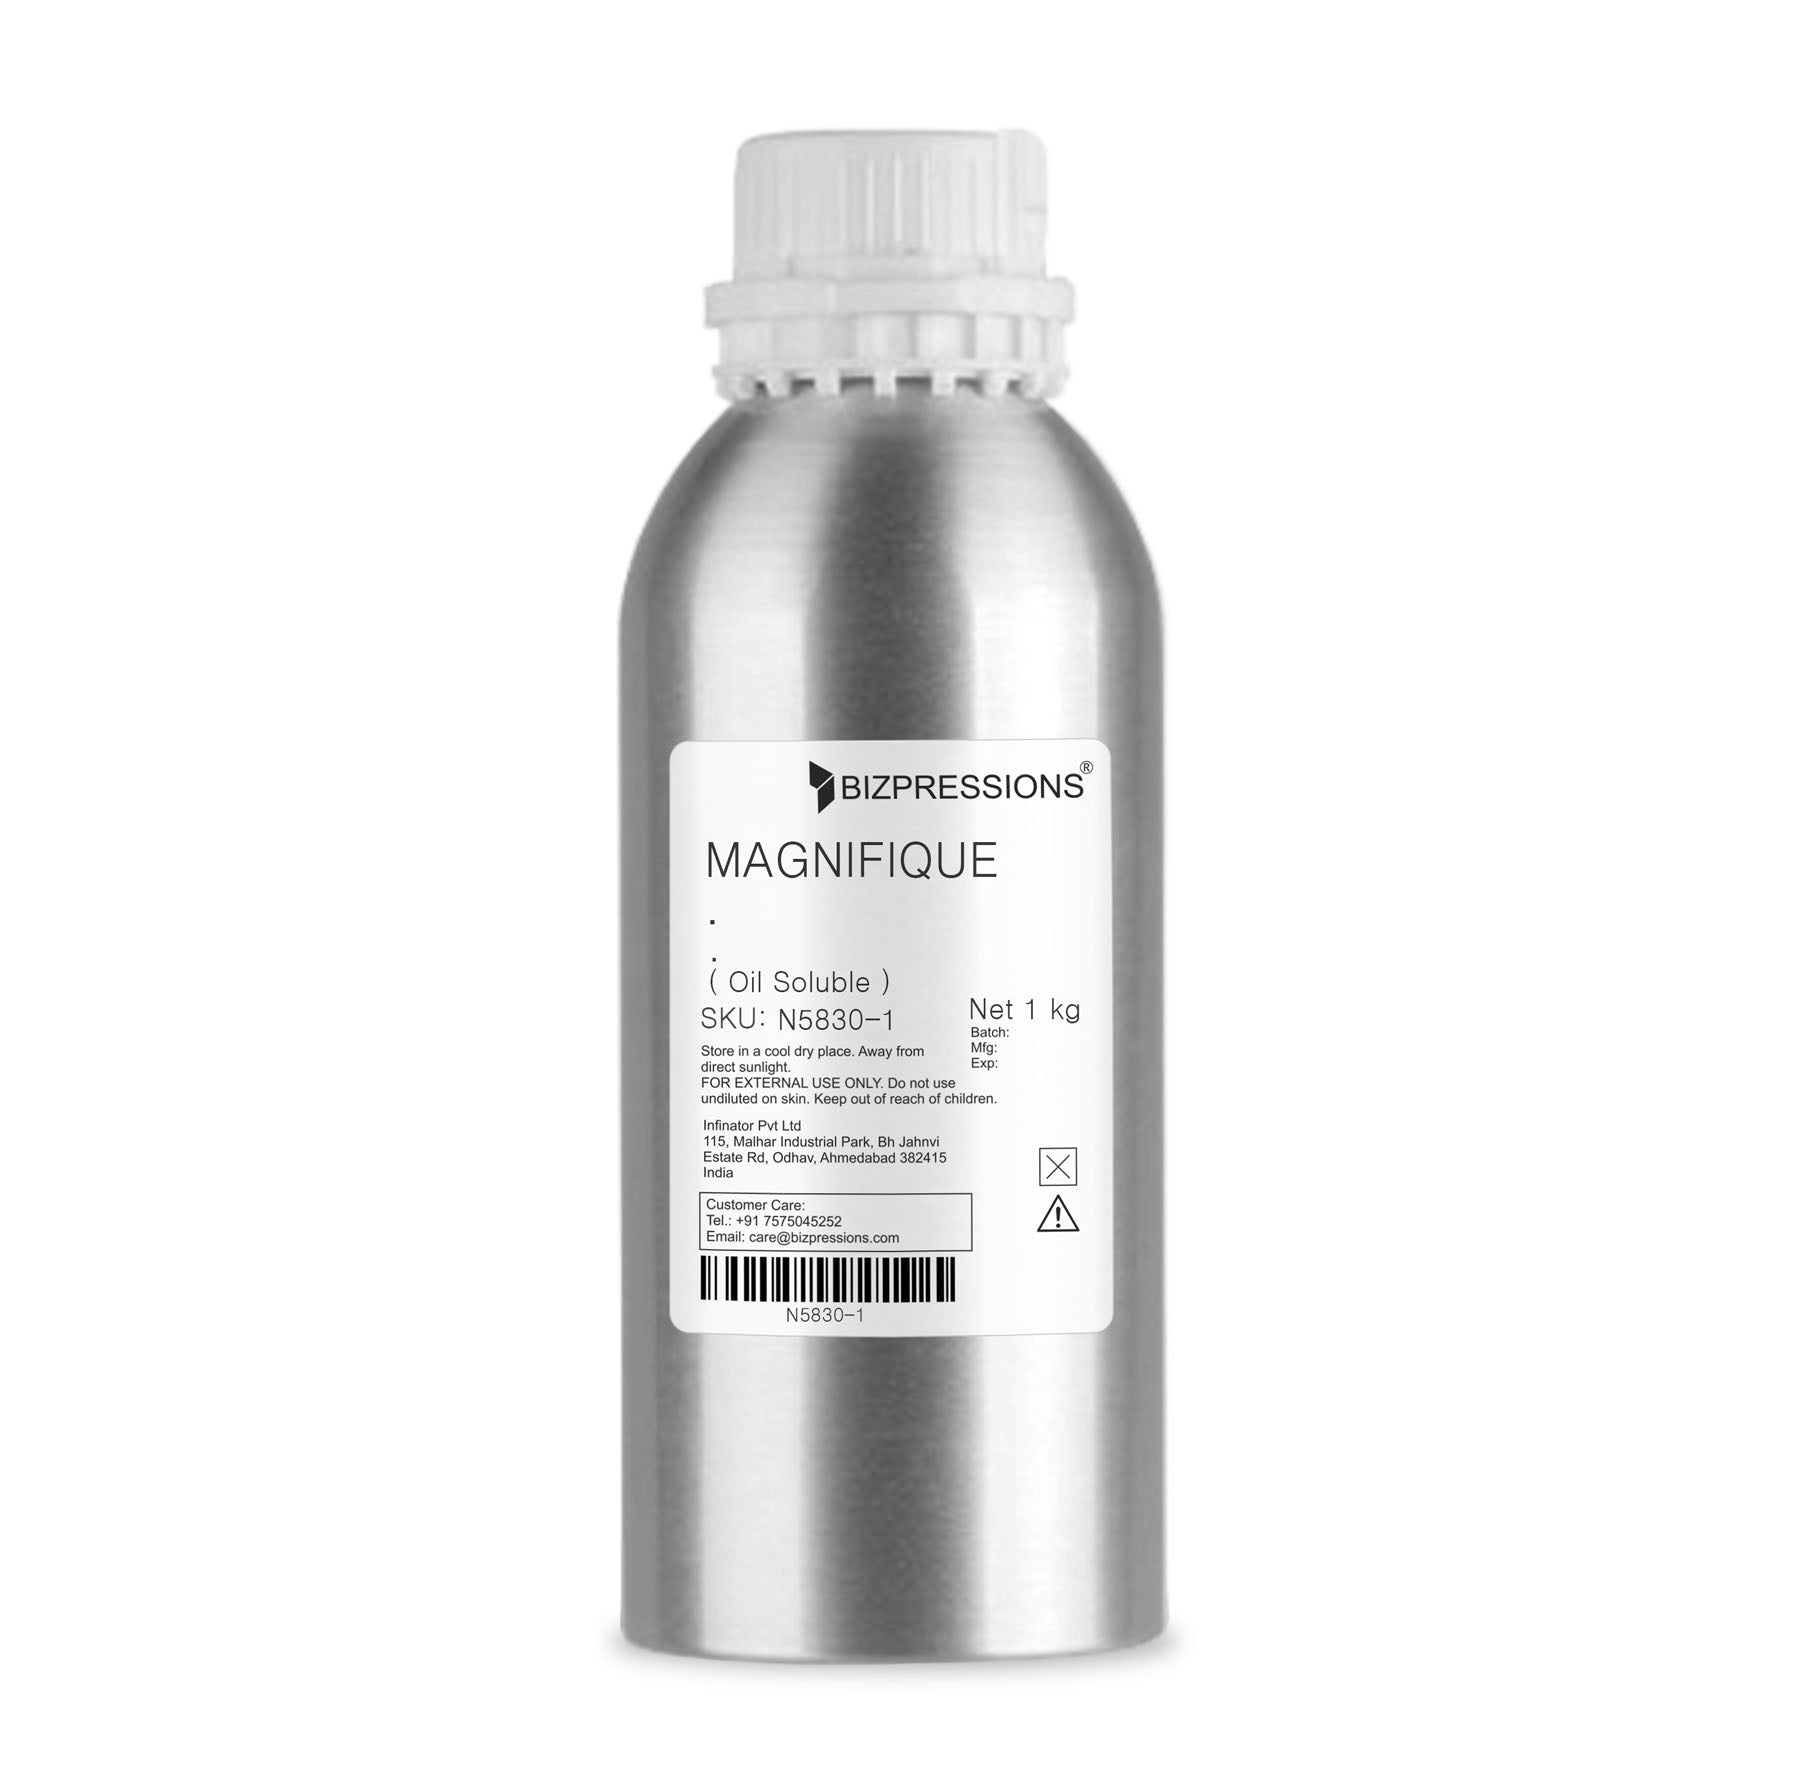 MAGNIFIQUE - Fragrance ( Oil Soluble ) - 100 gm